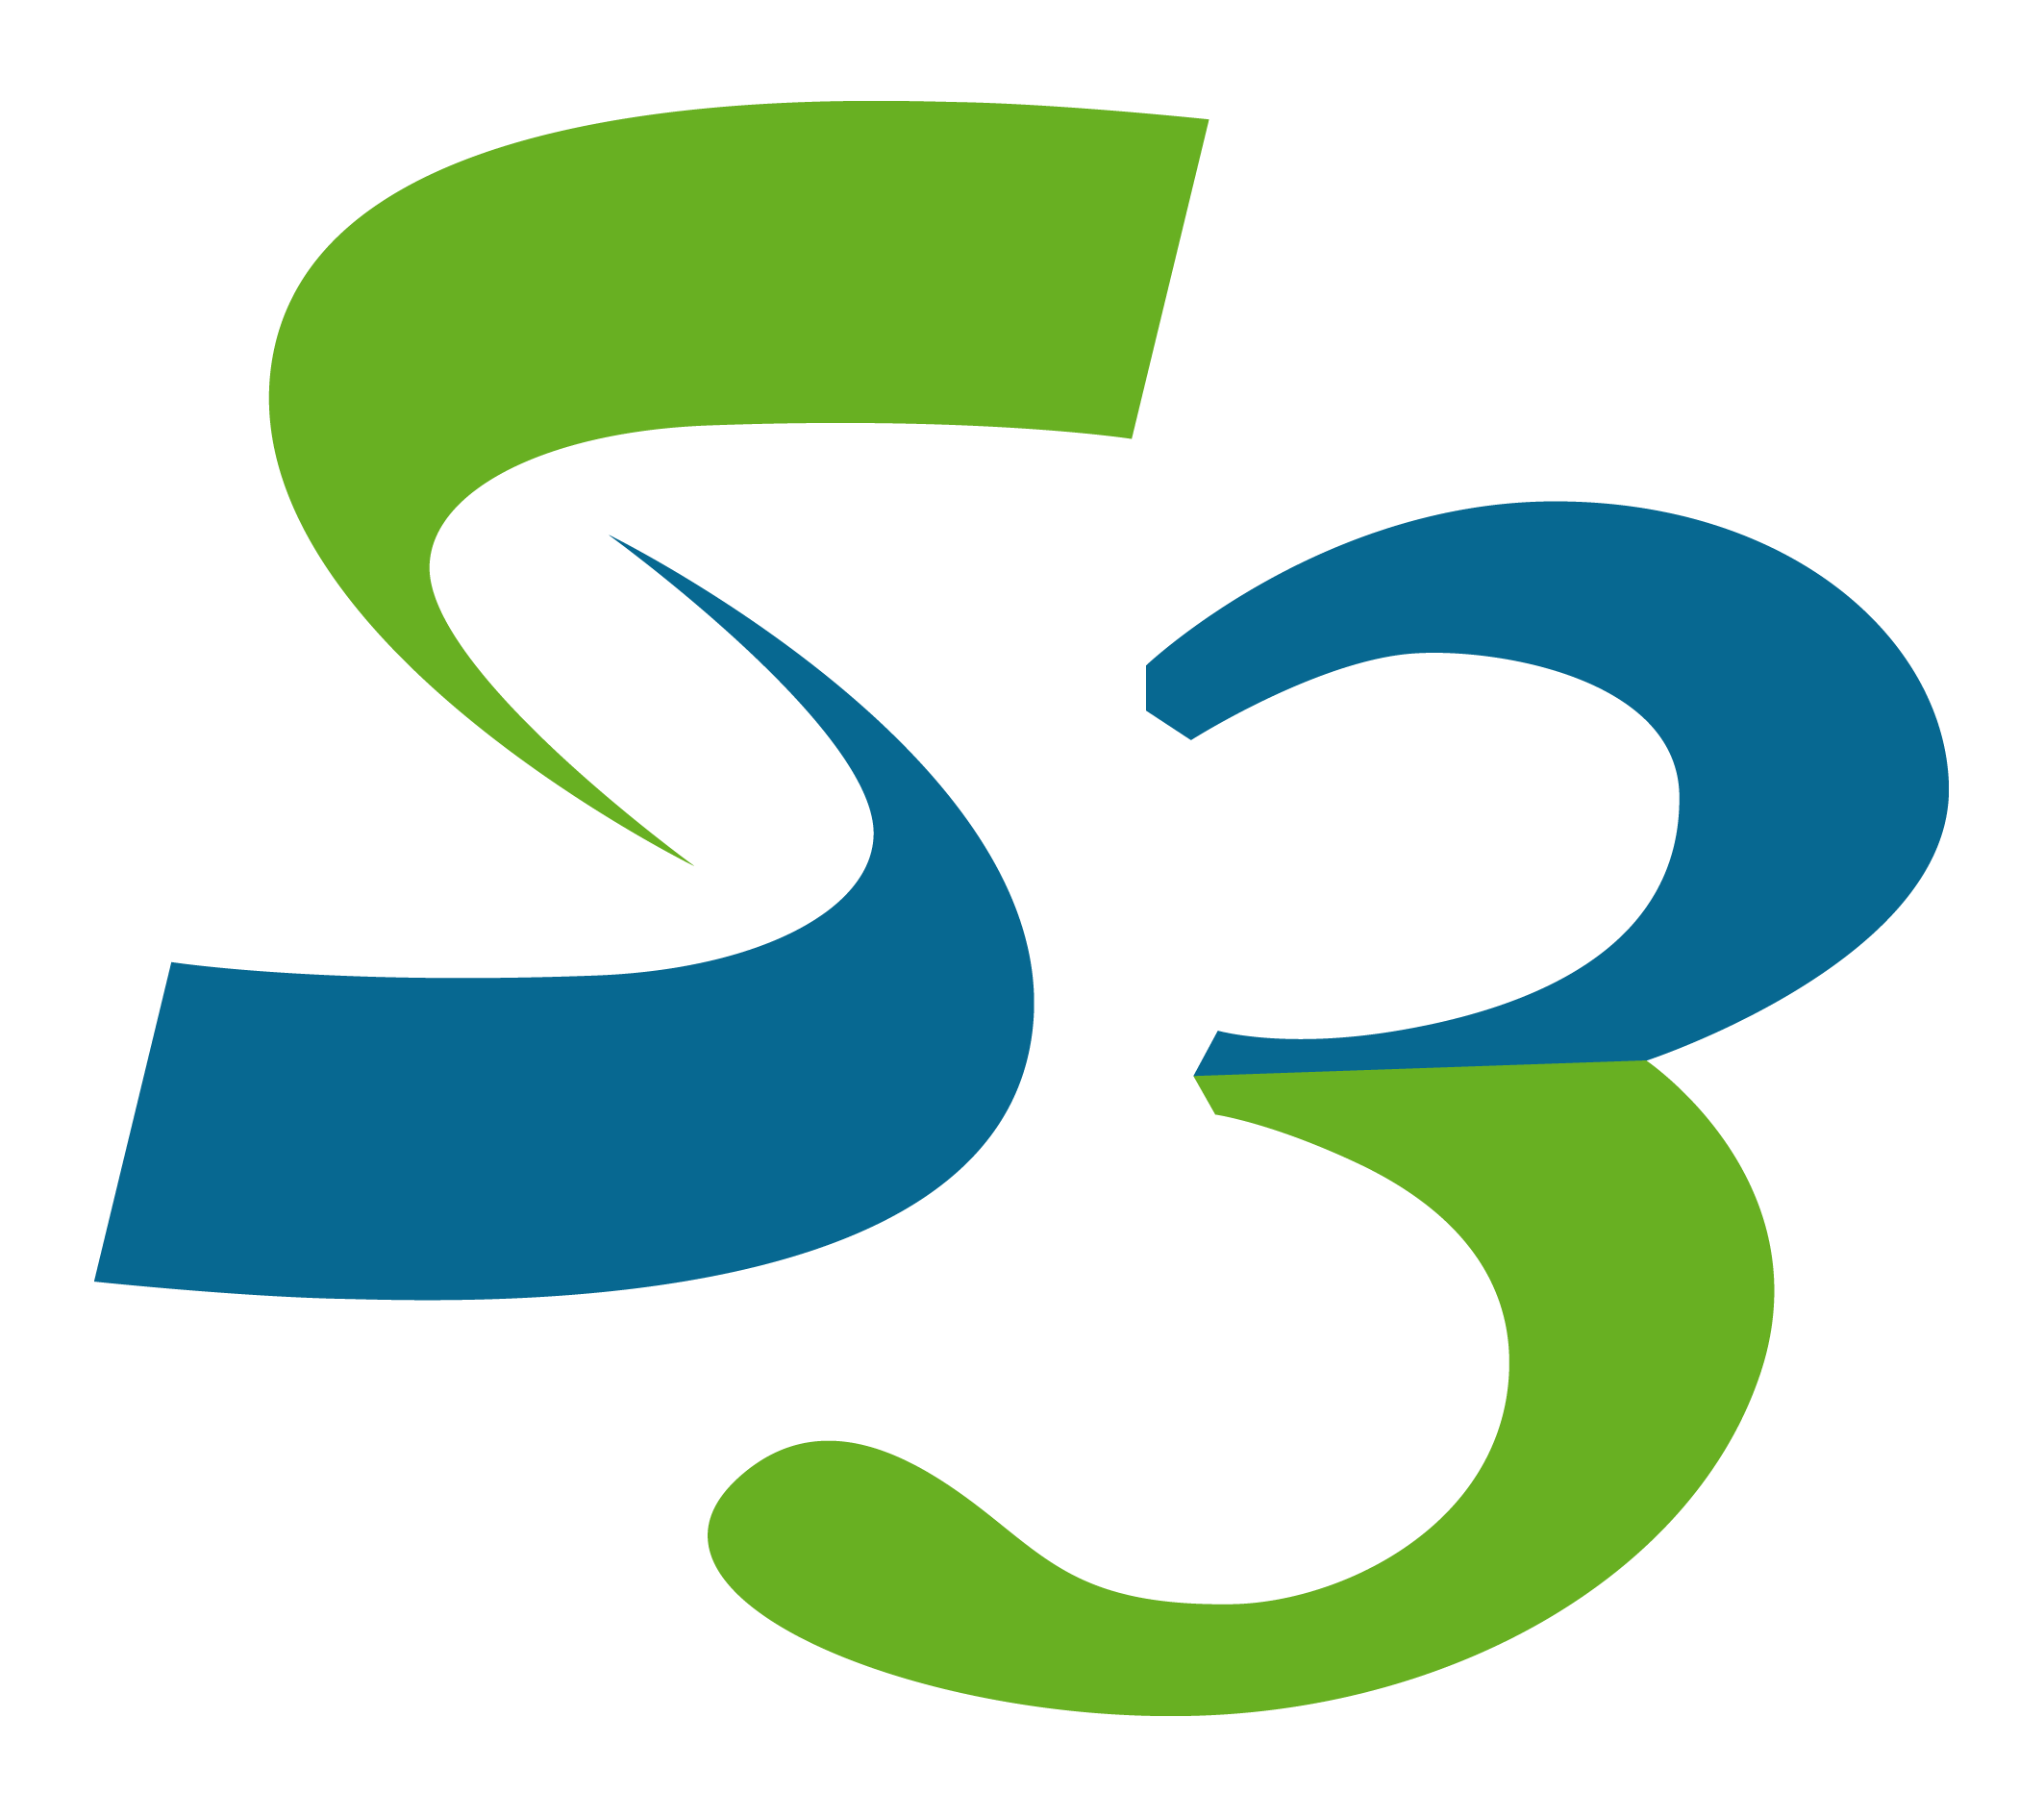 s3 logo